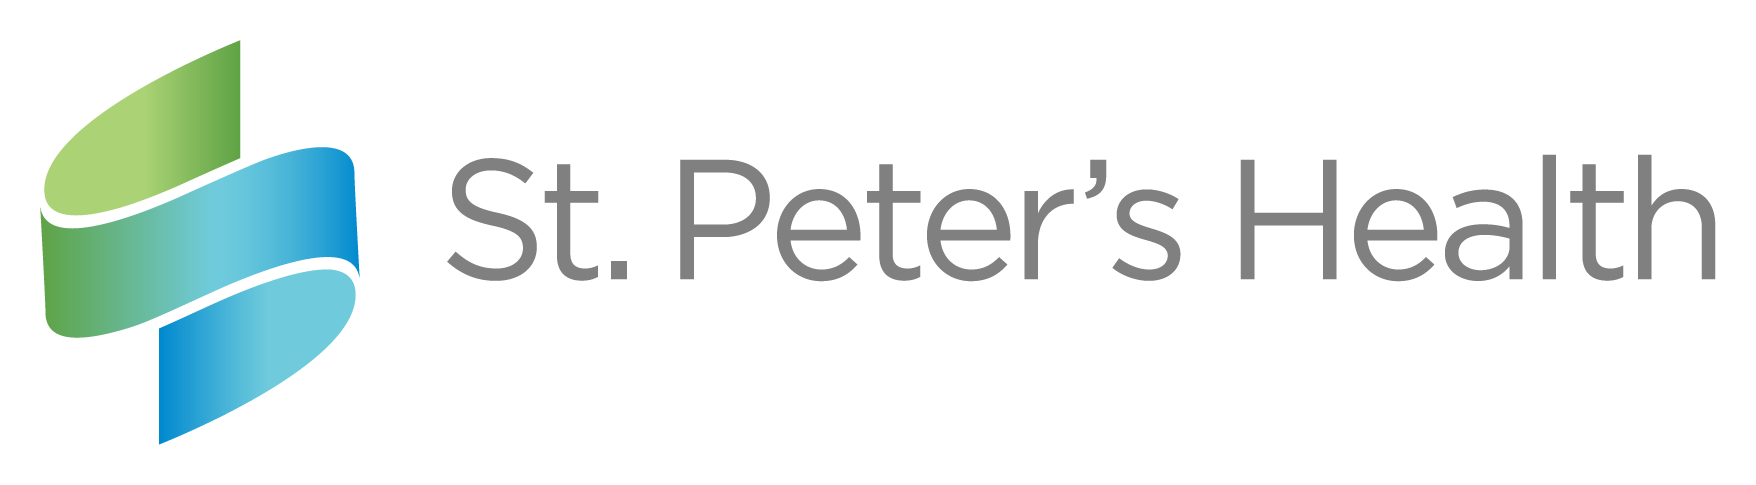 E. St. Peter's Health (Presentación)